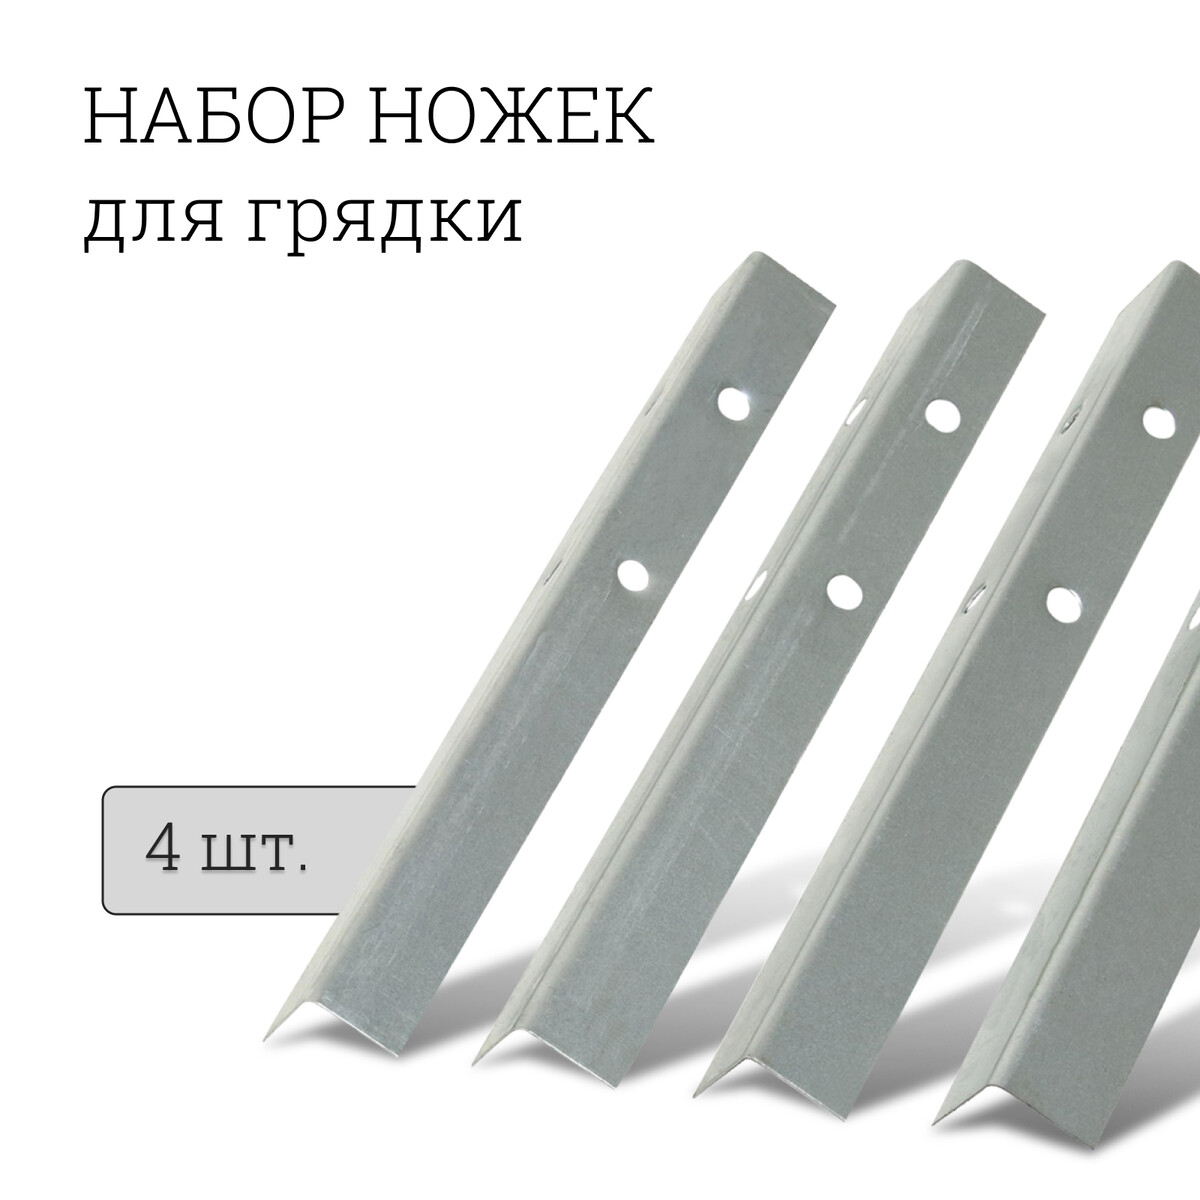 Набор ножек для грядки, 4 шт., оцинкованные, серый, greengo Greengo